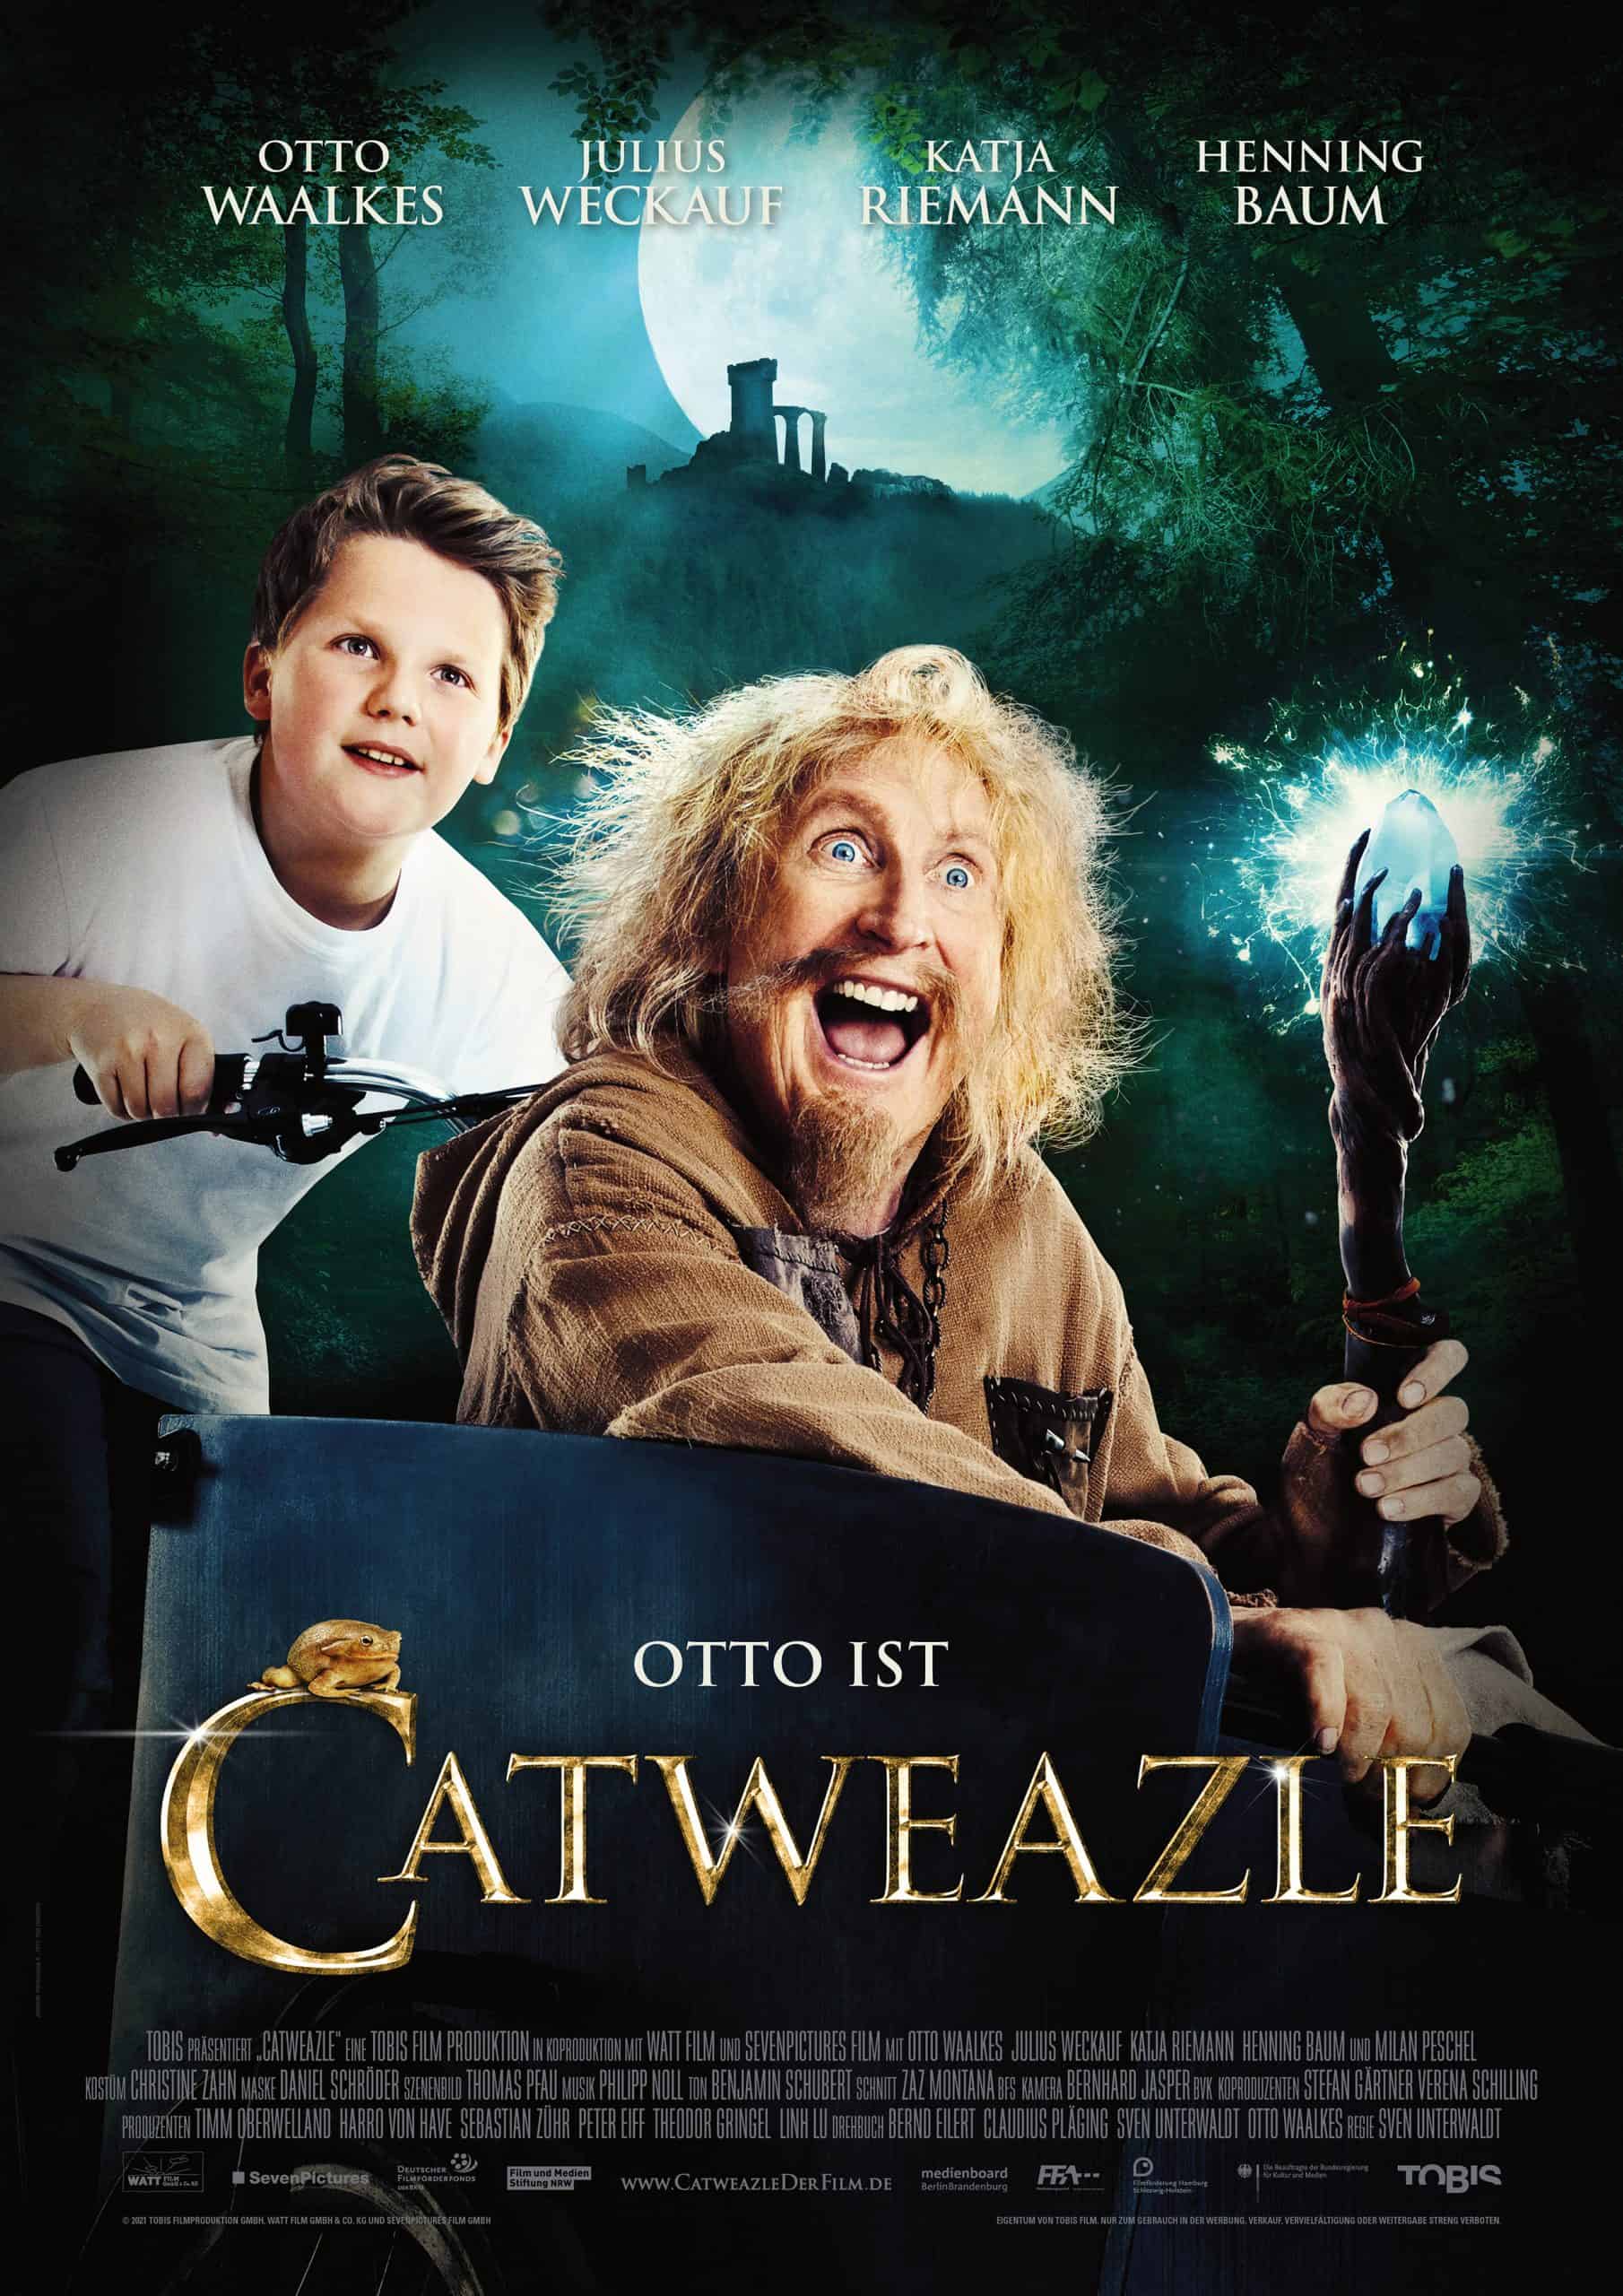 Neuer Trailer zu "CATWEAZLE" Mit Otto Waalkes